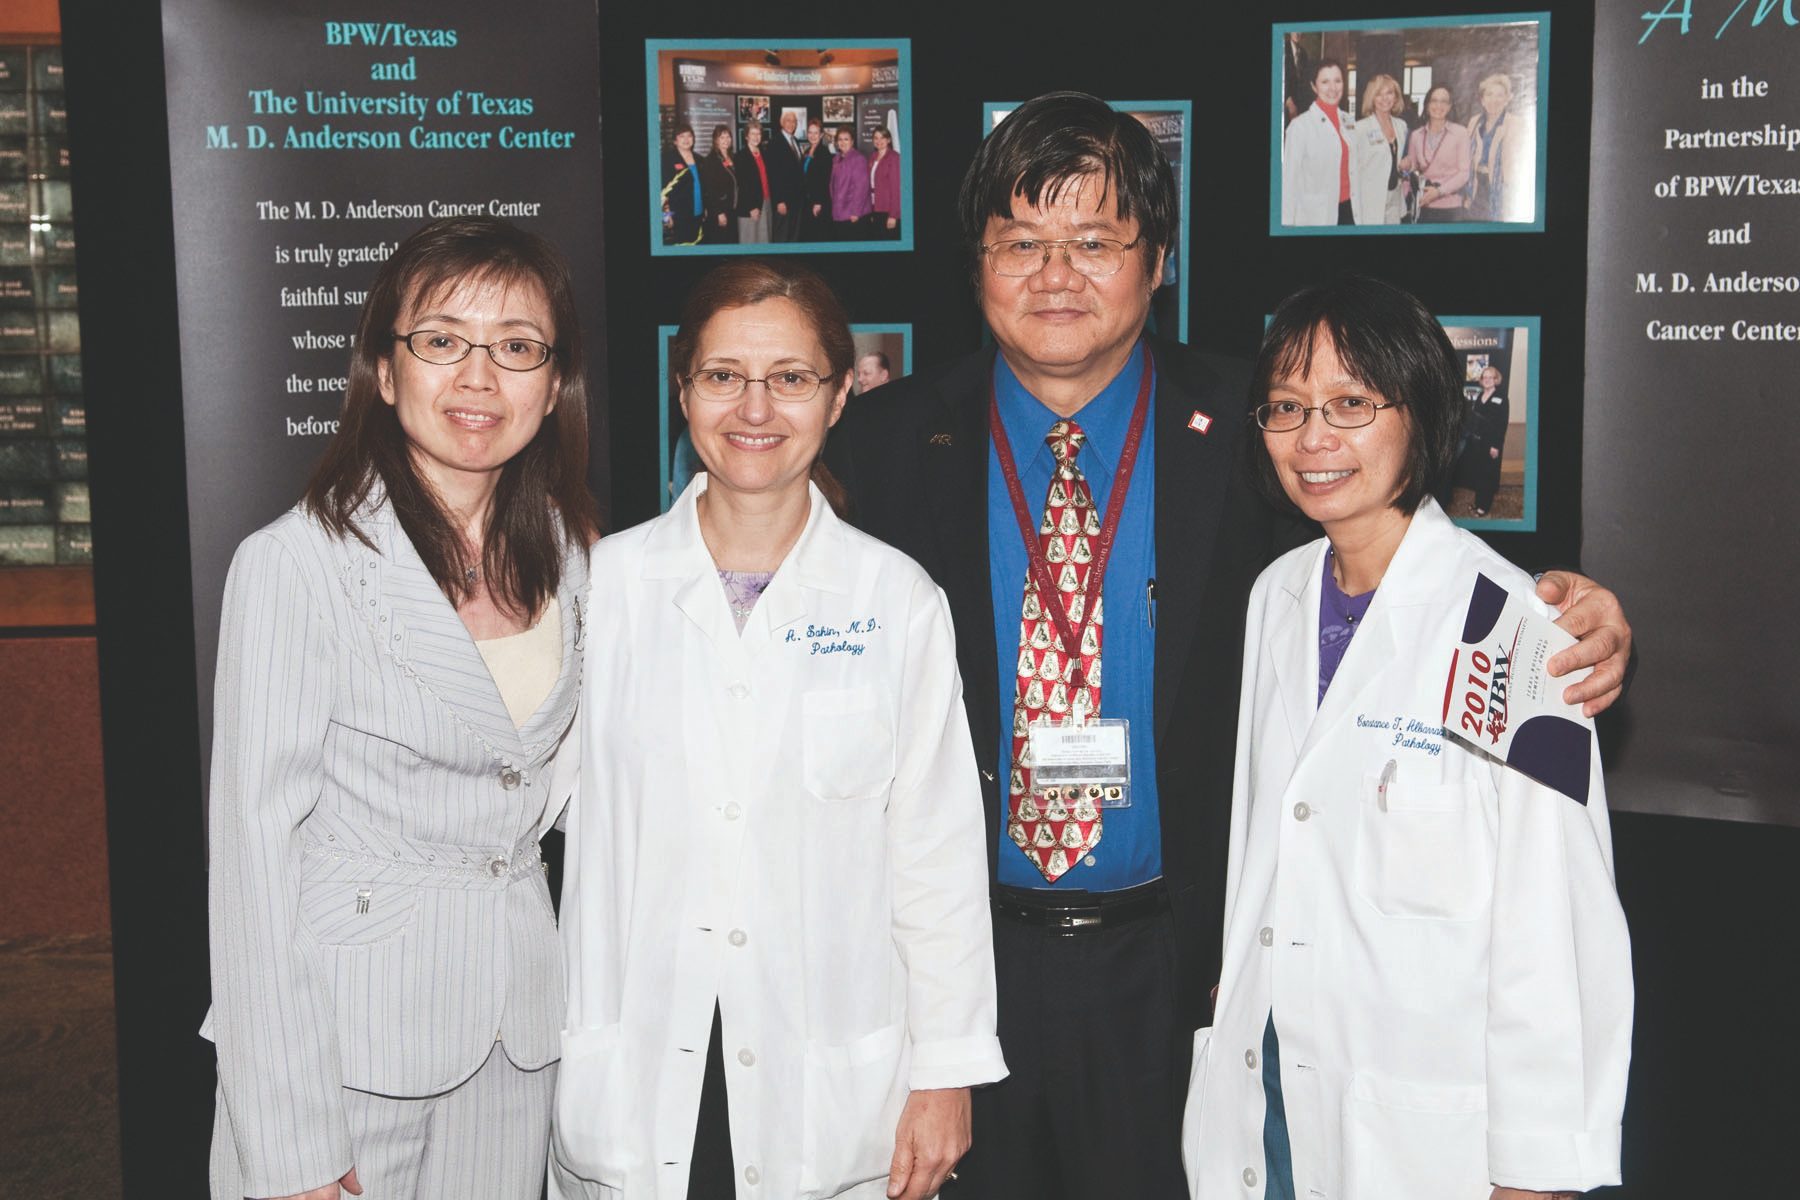 左起，Yu Dihua，医学博士，分子和细胞肿瘤学教授，在获得今年的TBW奖后停顿，Aysegul A. Sahin，医学博士，病理学教授，分子和细胞生物学系主任，Mien-Chie Hung，博士;还有康斯坦斯·阿尔瓦拉辛，医学博士，病理学副教授。Barry Smith拍摄。